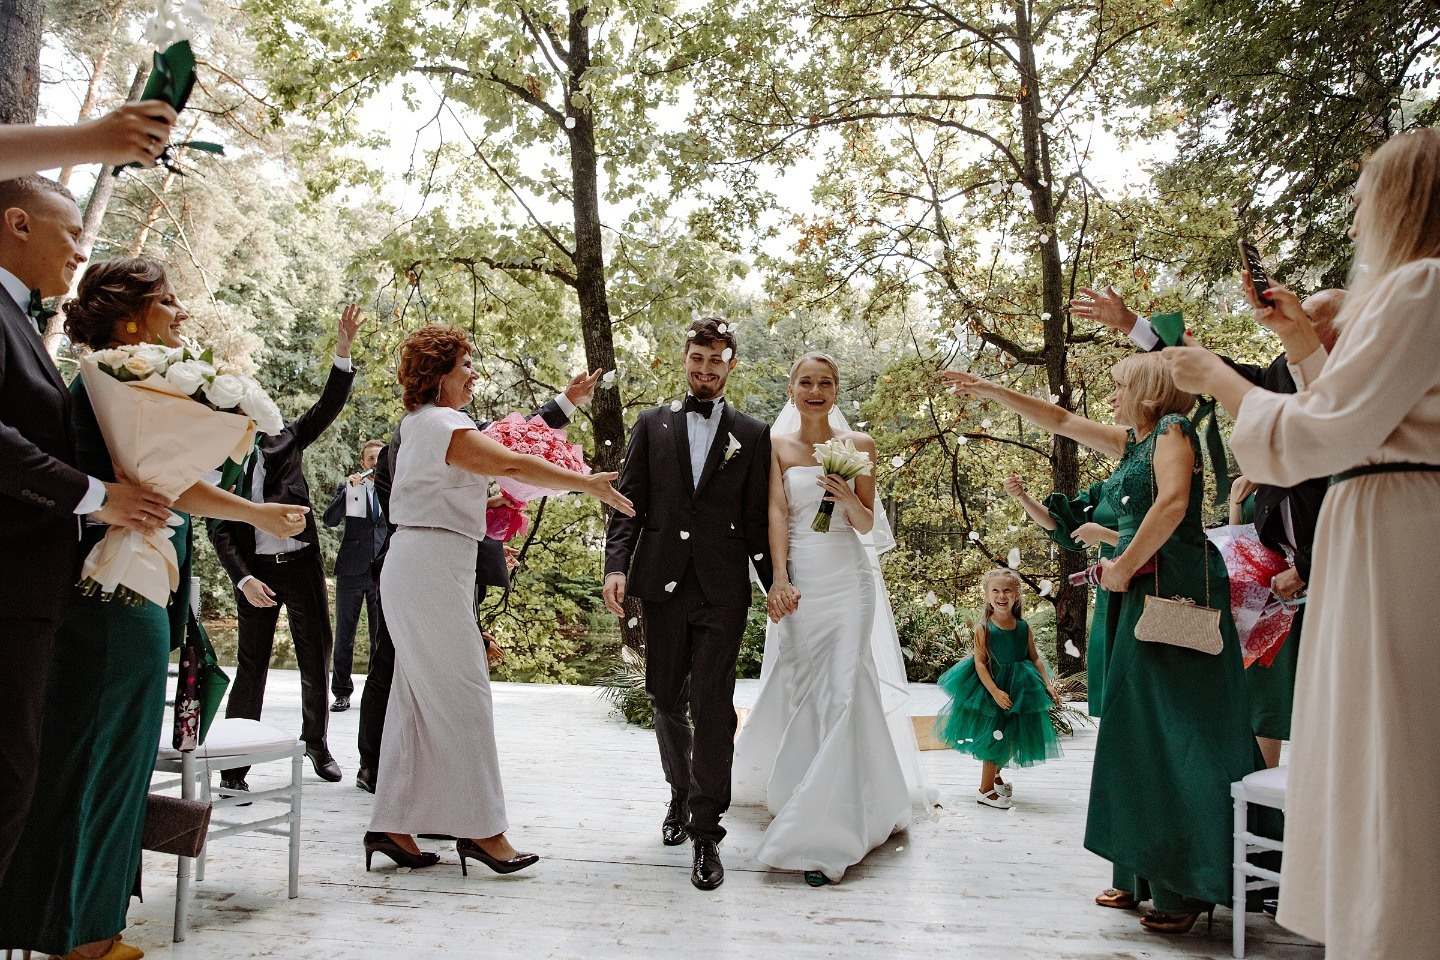 ФОТО ИЗ СТАТЬИ: Итальянский стиль: камерная свадьба на открытом воздухе